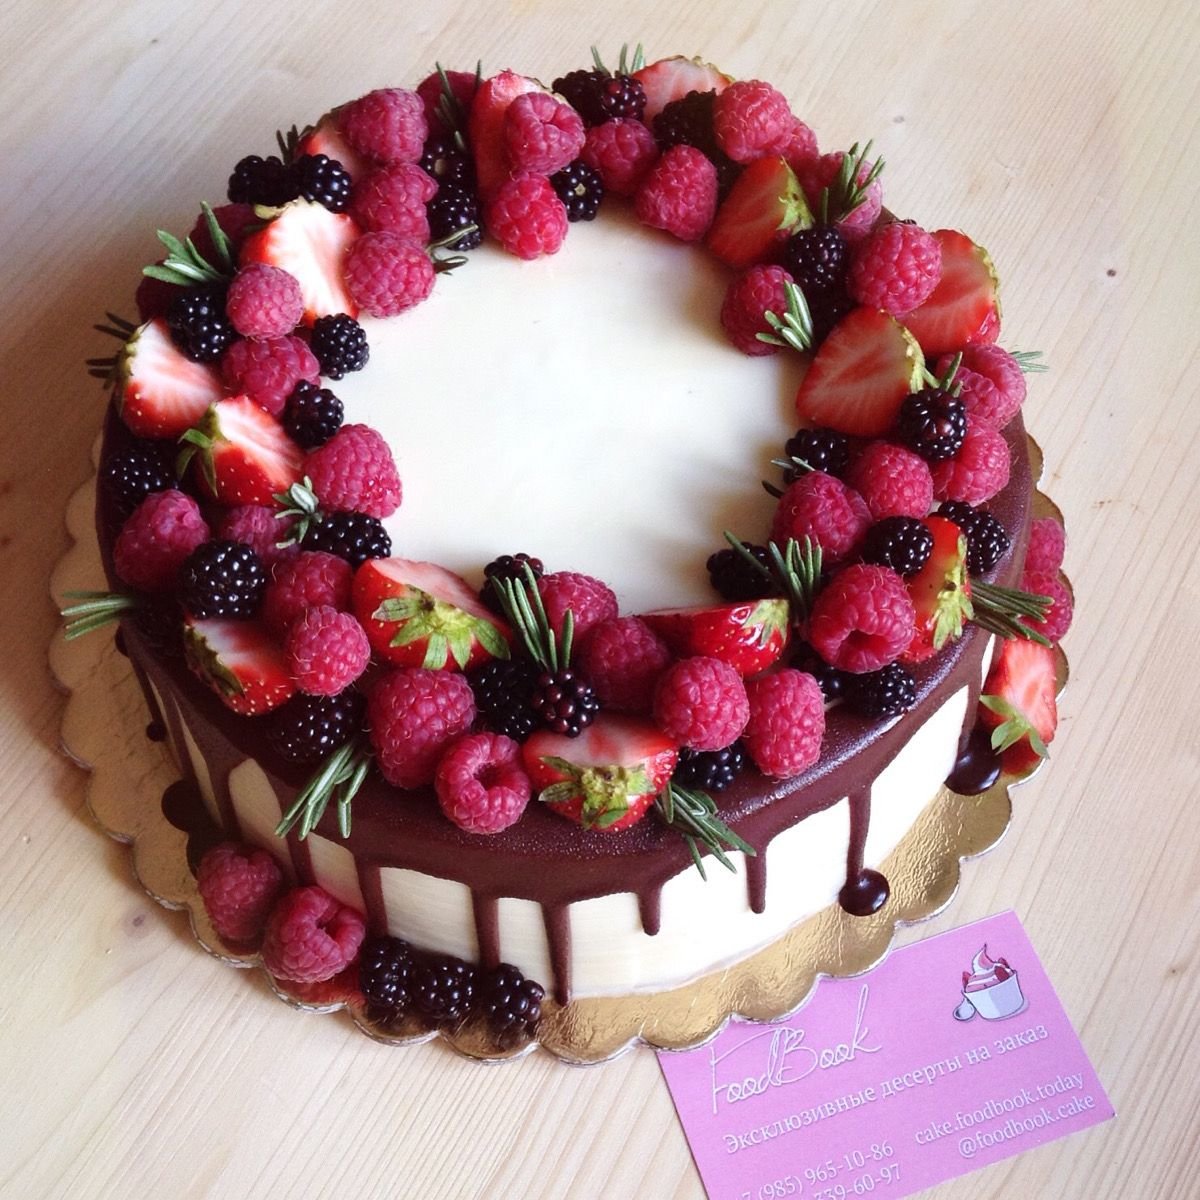 Chia sẻ 15 mẫu bánh sinh nhật trái cây thơm ngon dành riêng cho bạn